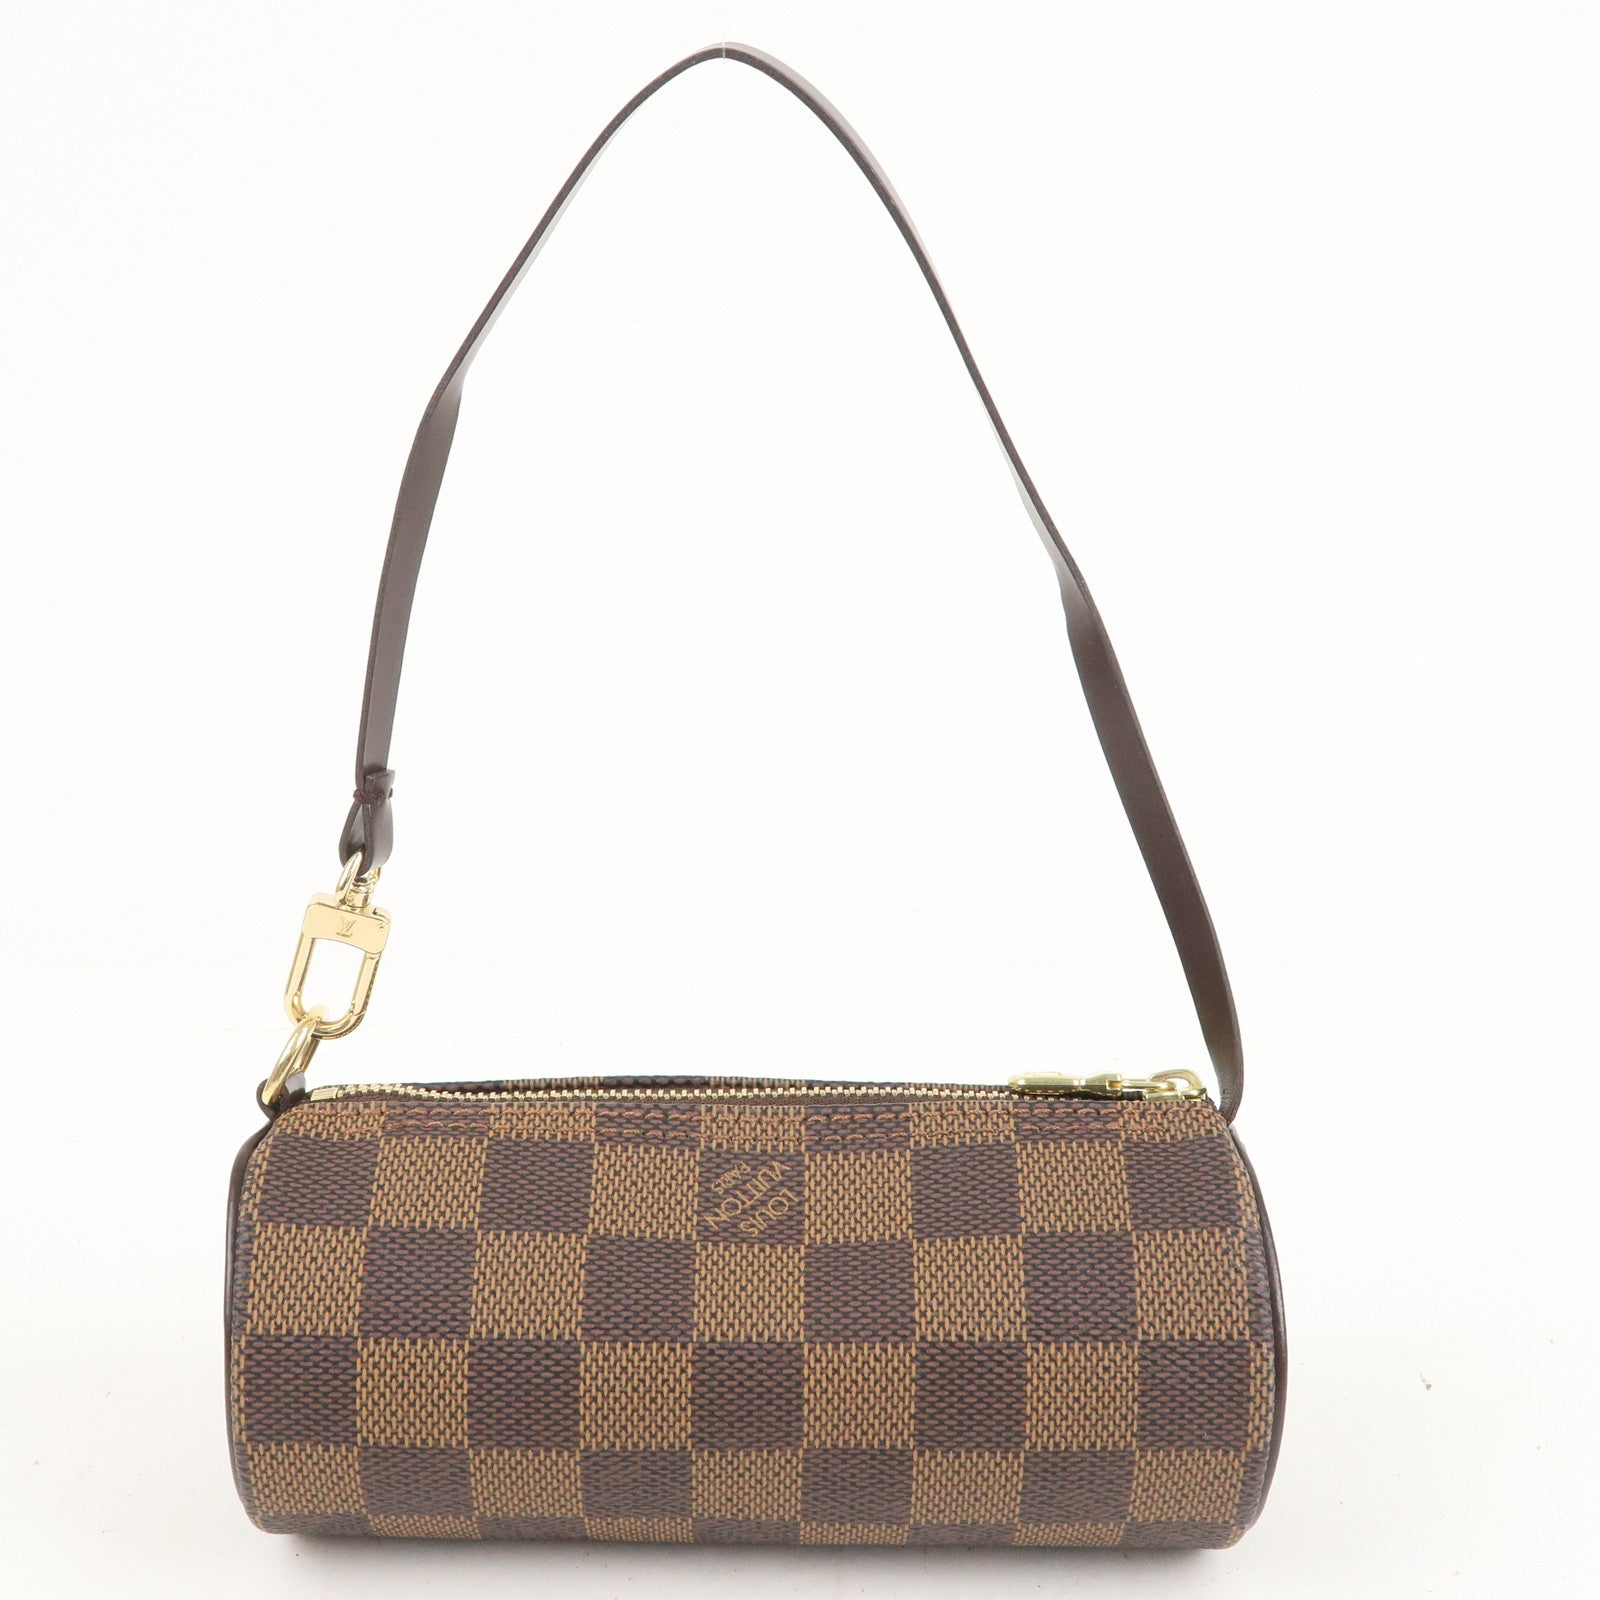 Unboxing Louis Vuitton damier ebene mini papillon bag it's so cute gorgeous  designer handbag 